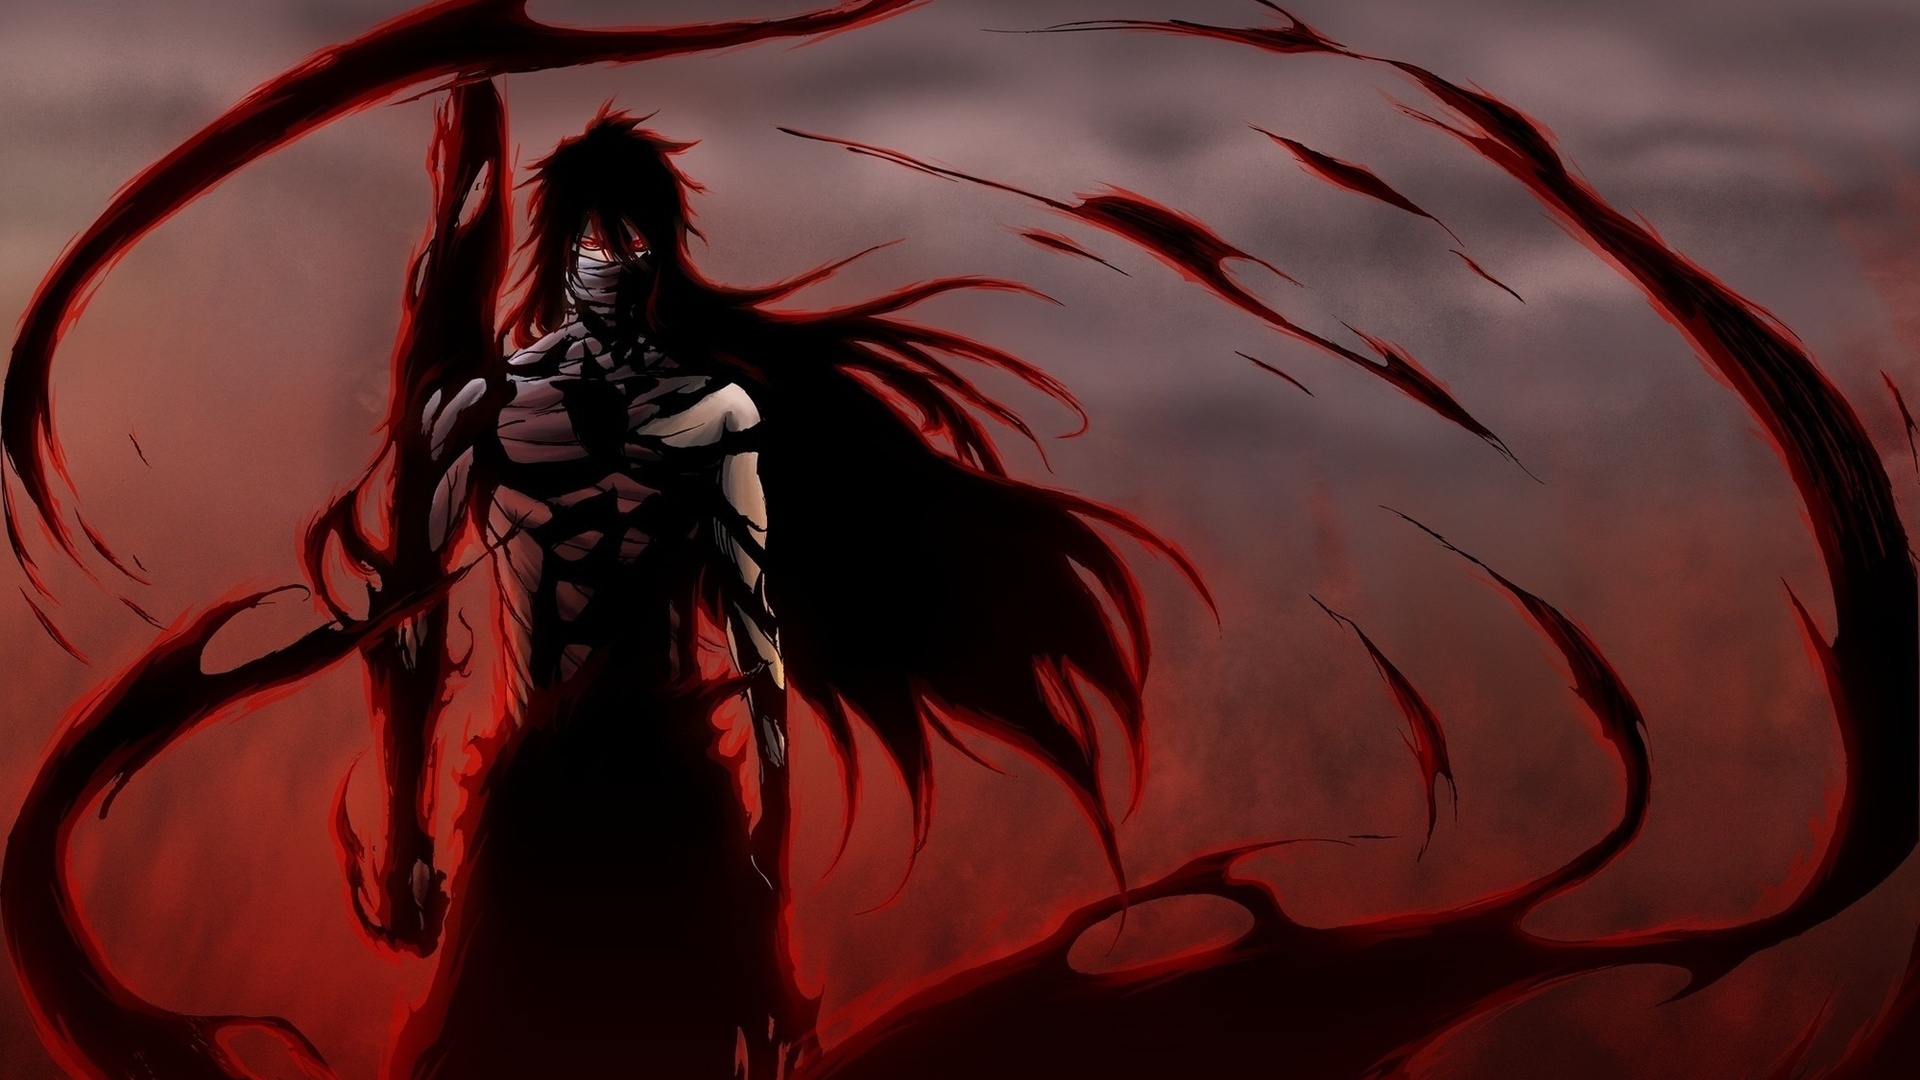 Anime Bleach Ichego Posture Wind Background Wallpaper